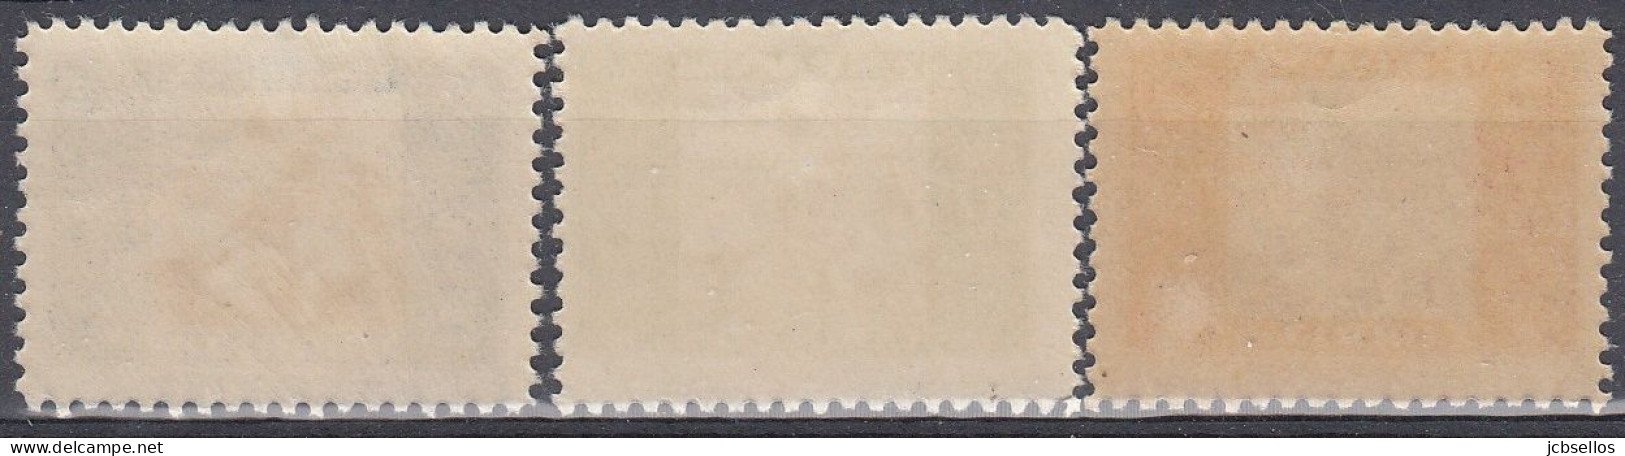 ESPAÑA BENEFICENCIA 1937 Nº 9/11 NUEVO SIN CHARNELA - Charity